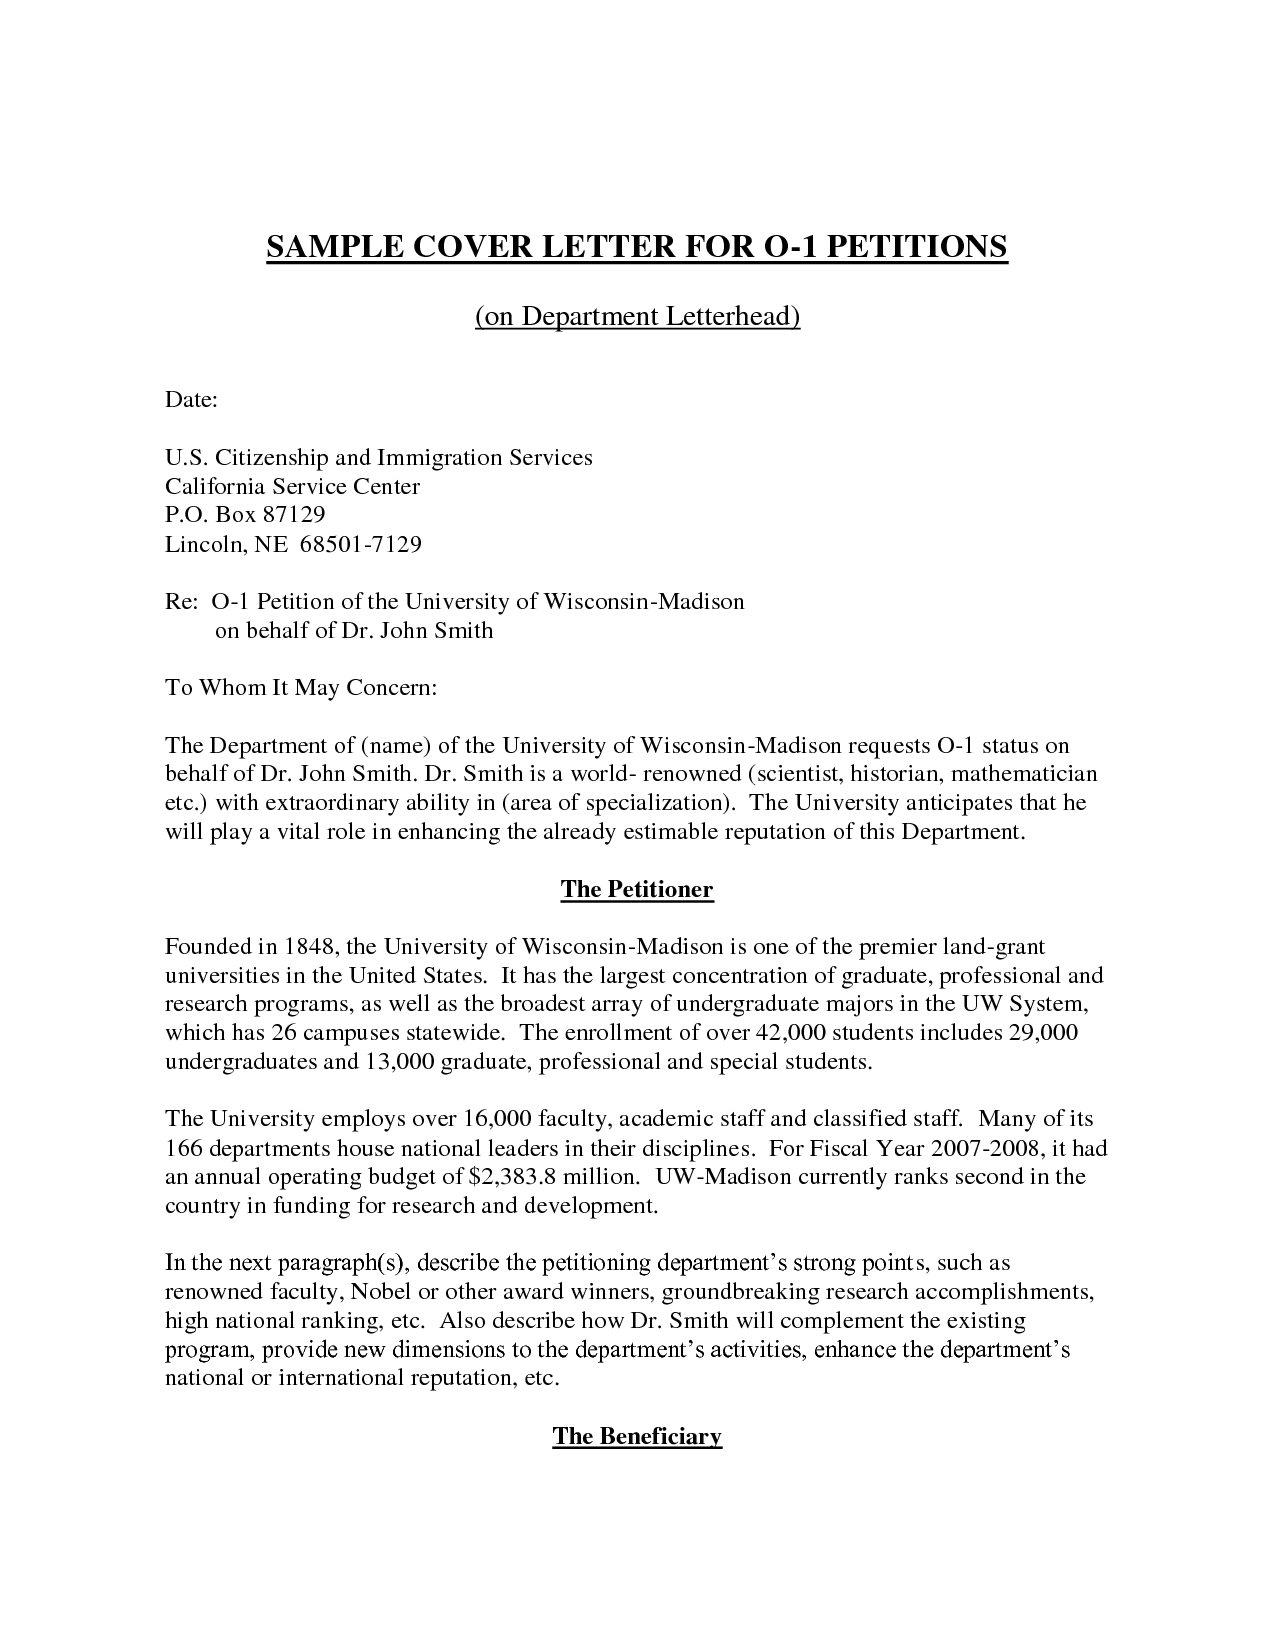 sample-cover-letter-for-study-visa-application-sample-letter